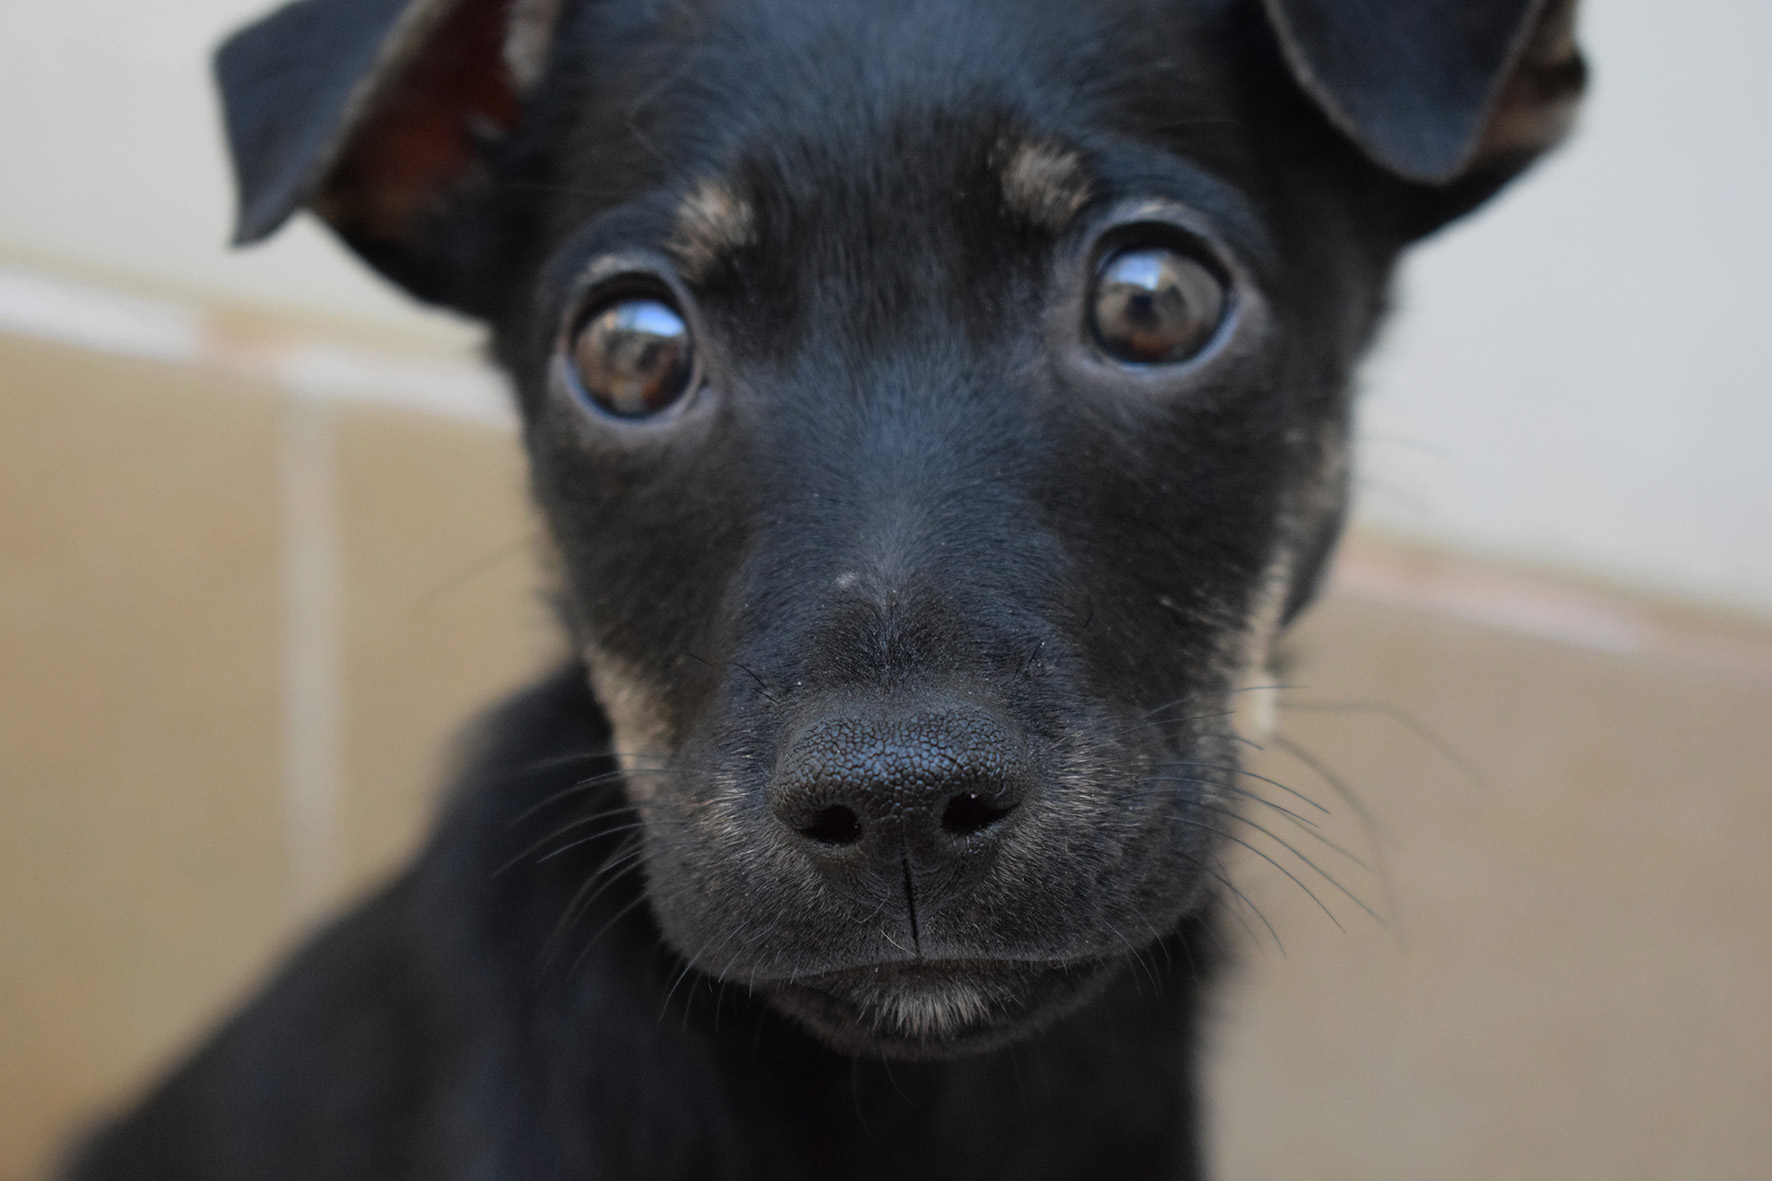 #PraCegoVer: Fotografia do cachorrinho Alfa. Ele é preto, tem olhos marrons e está olhando fixamente para a câmera.